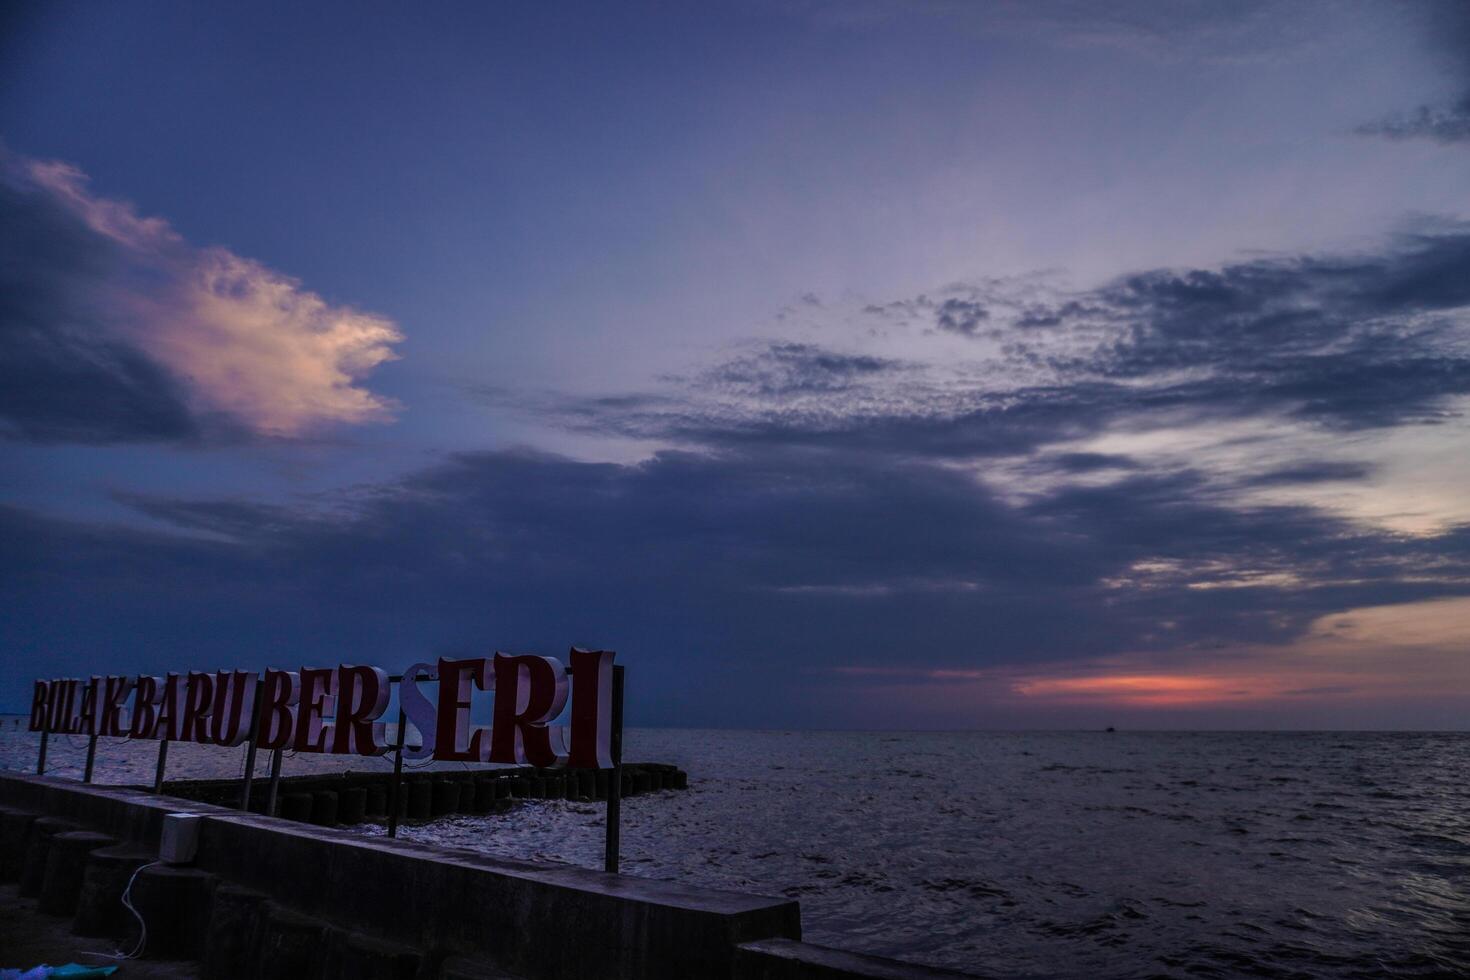 panorama av de solnedgång himmel på de kustlinje med fri Plats för reklam fotokopior. foto